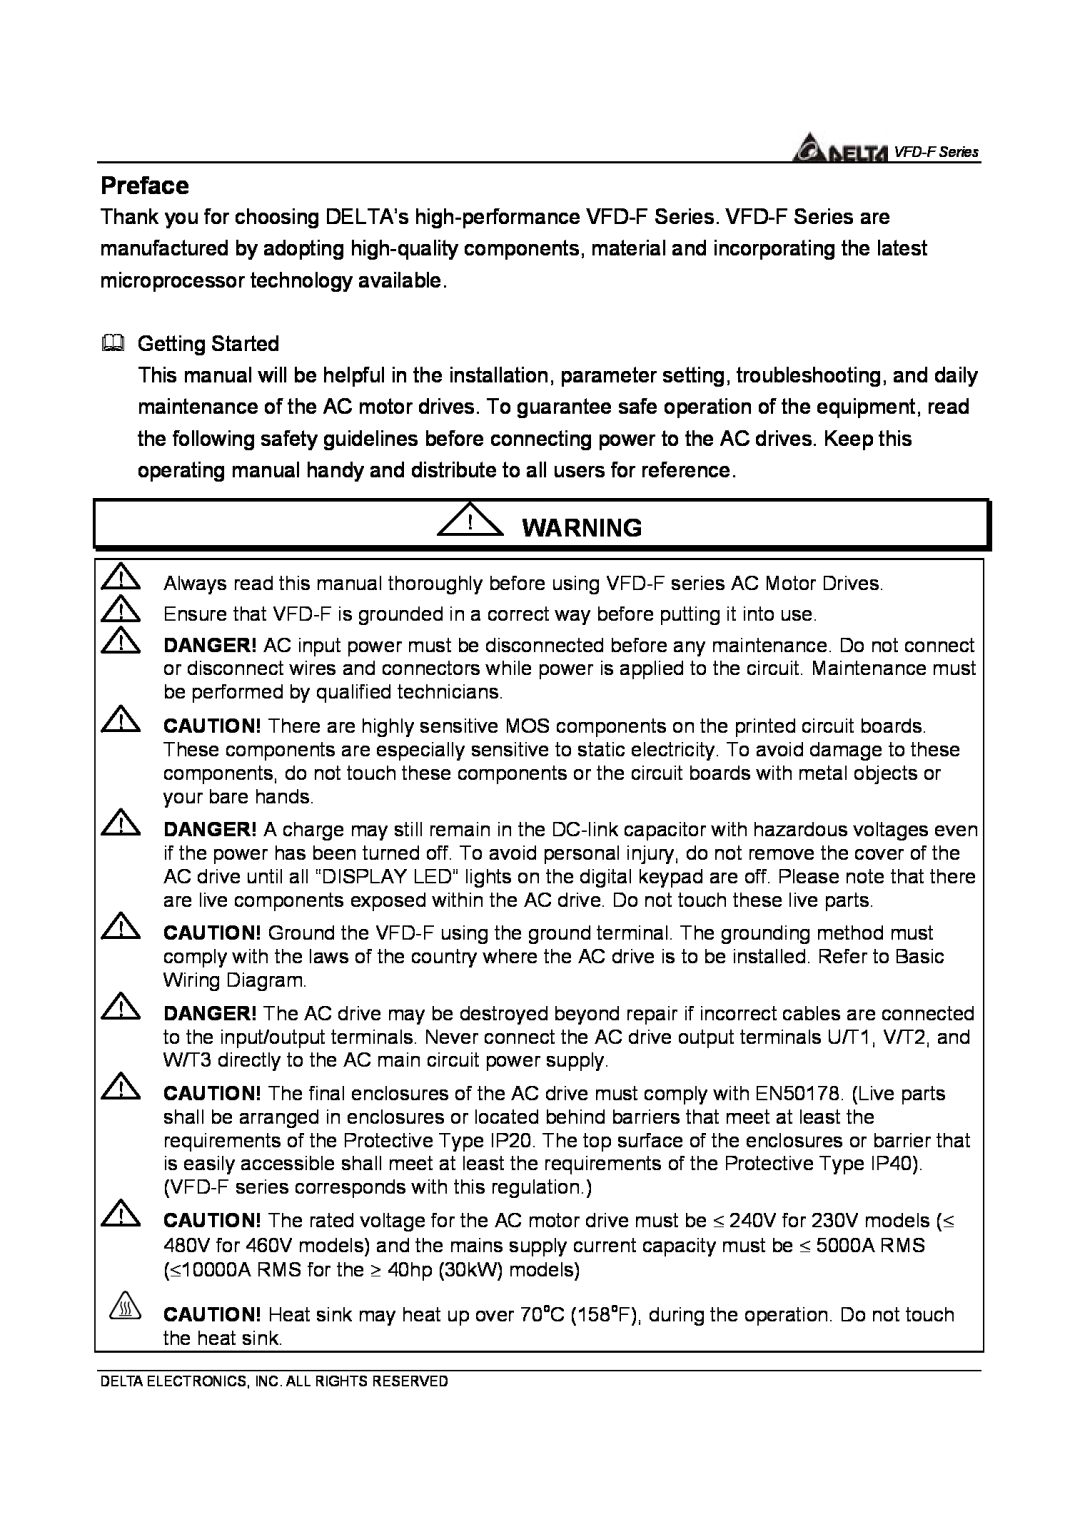 Delta Electronics VFD-F Series manual Preface 